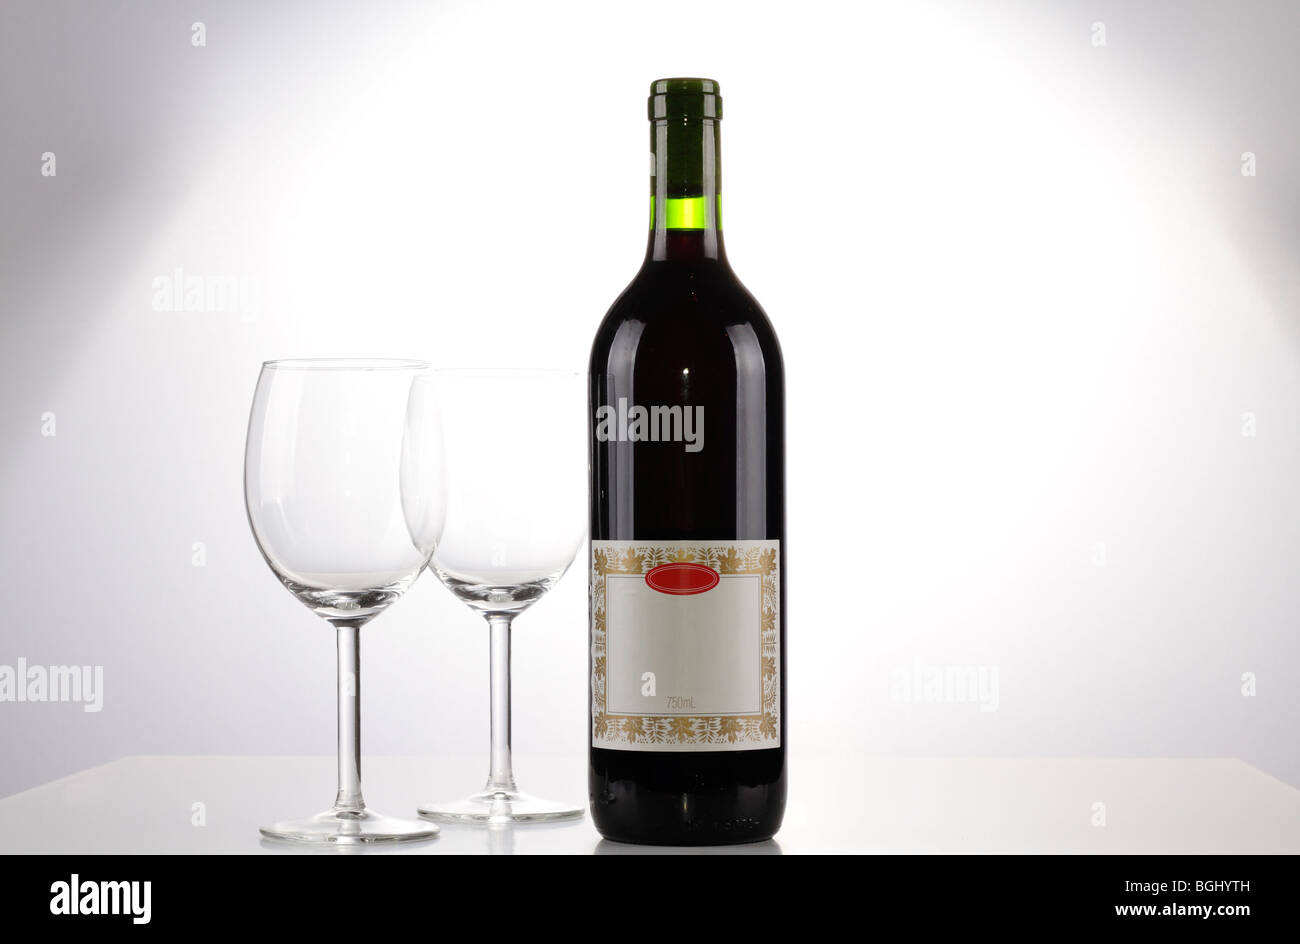 Une bouteille de vin rouge avec une étiquette vierge et deux verres de vin vide Banque D'Images